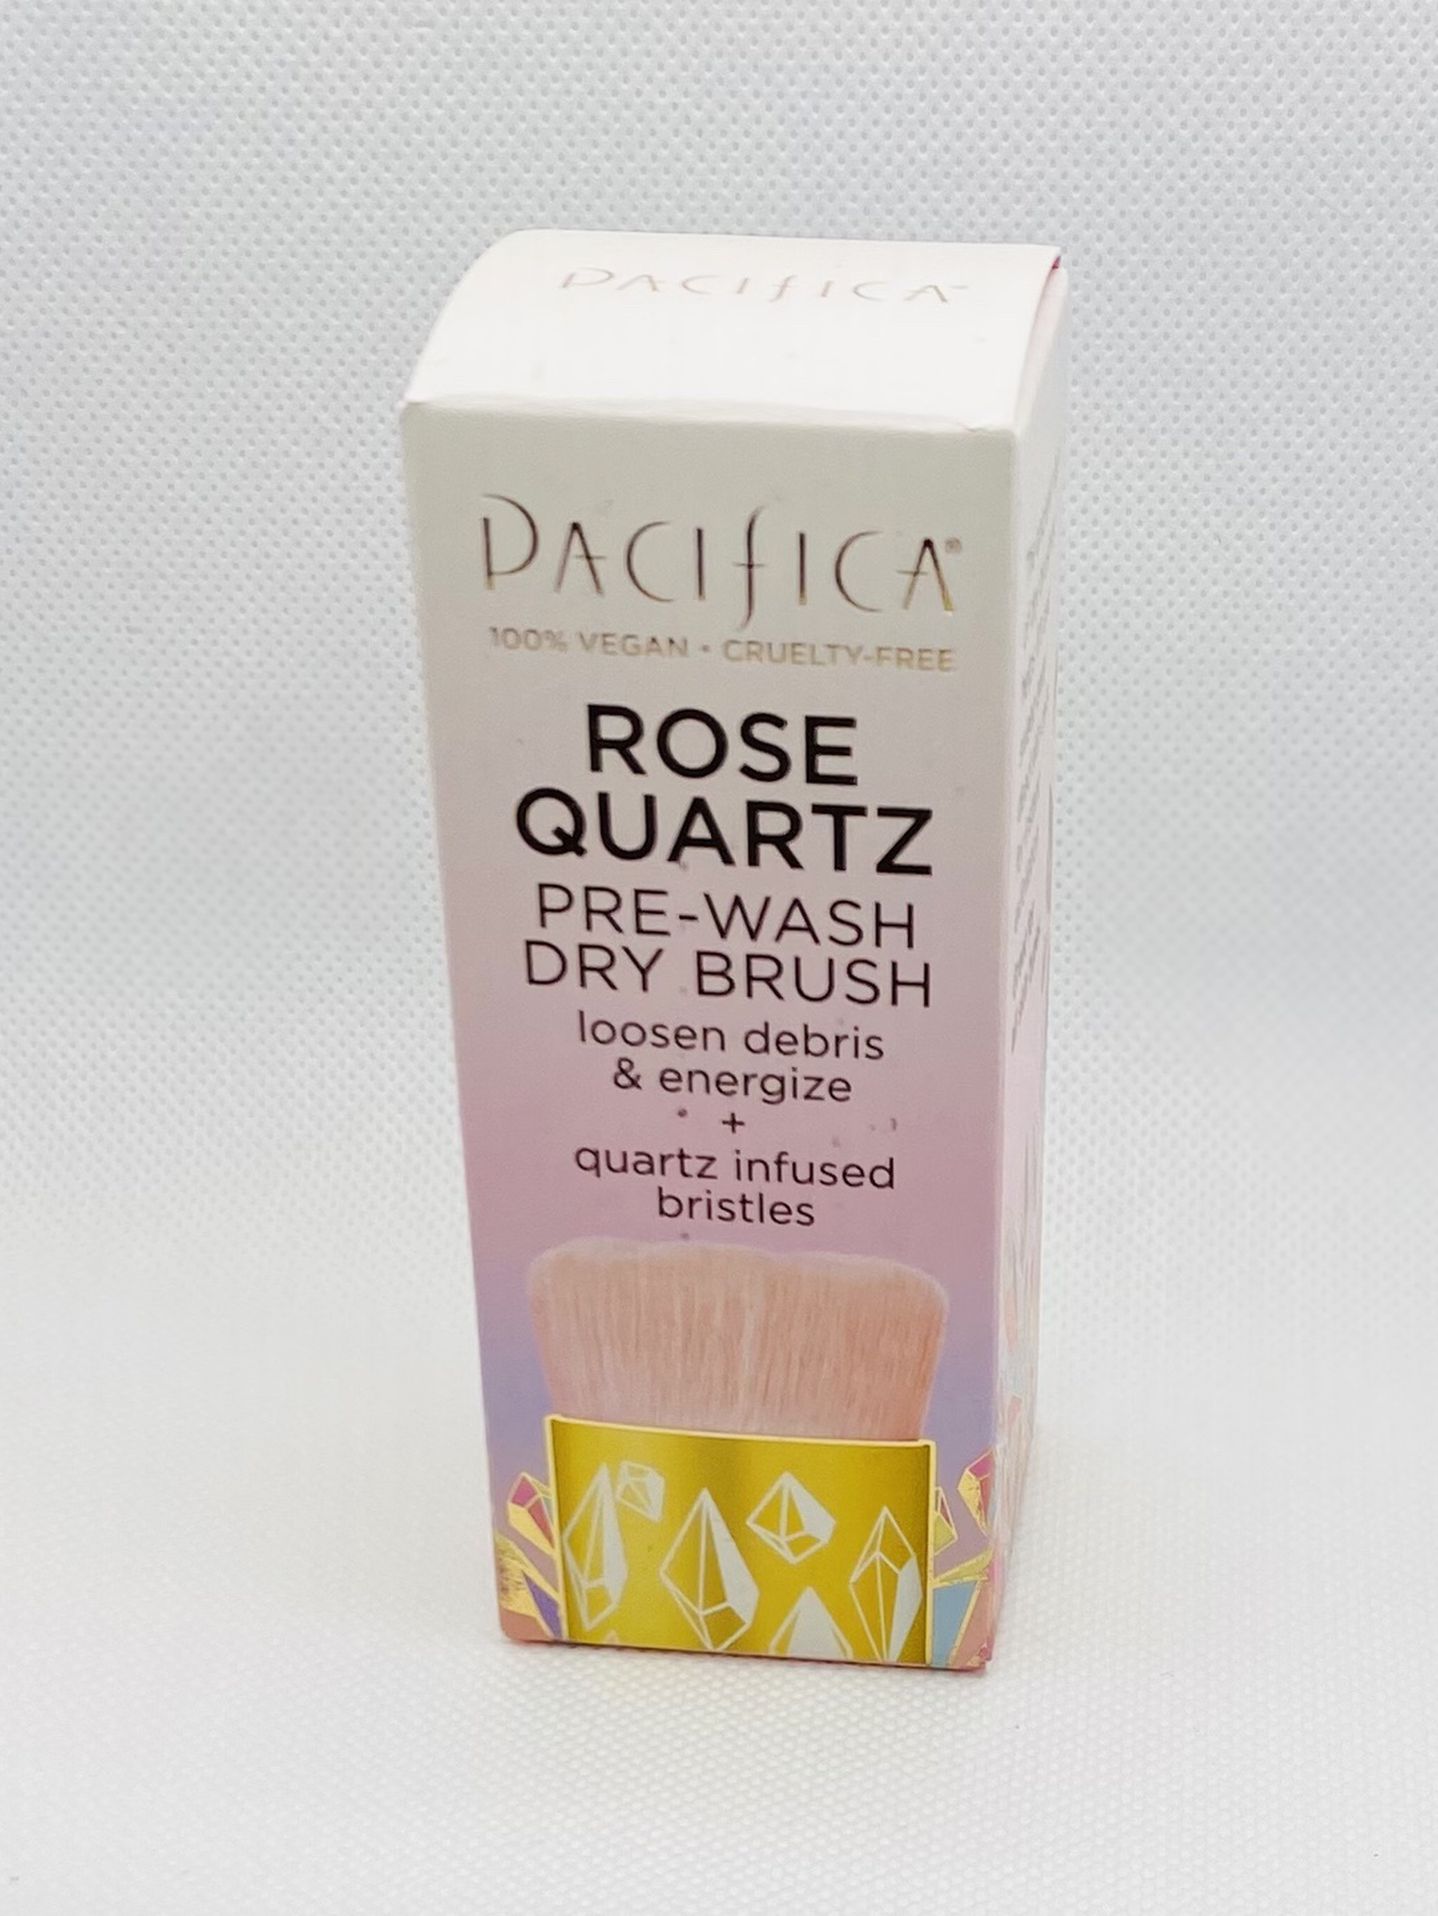 Rose Quartz Pre-Wash Dry Brush